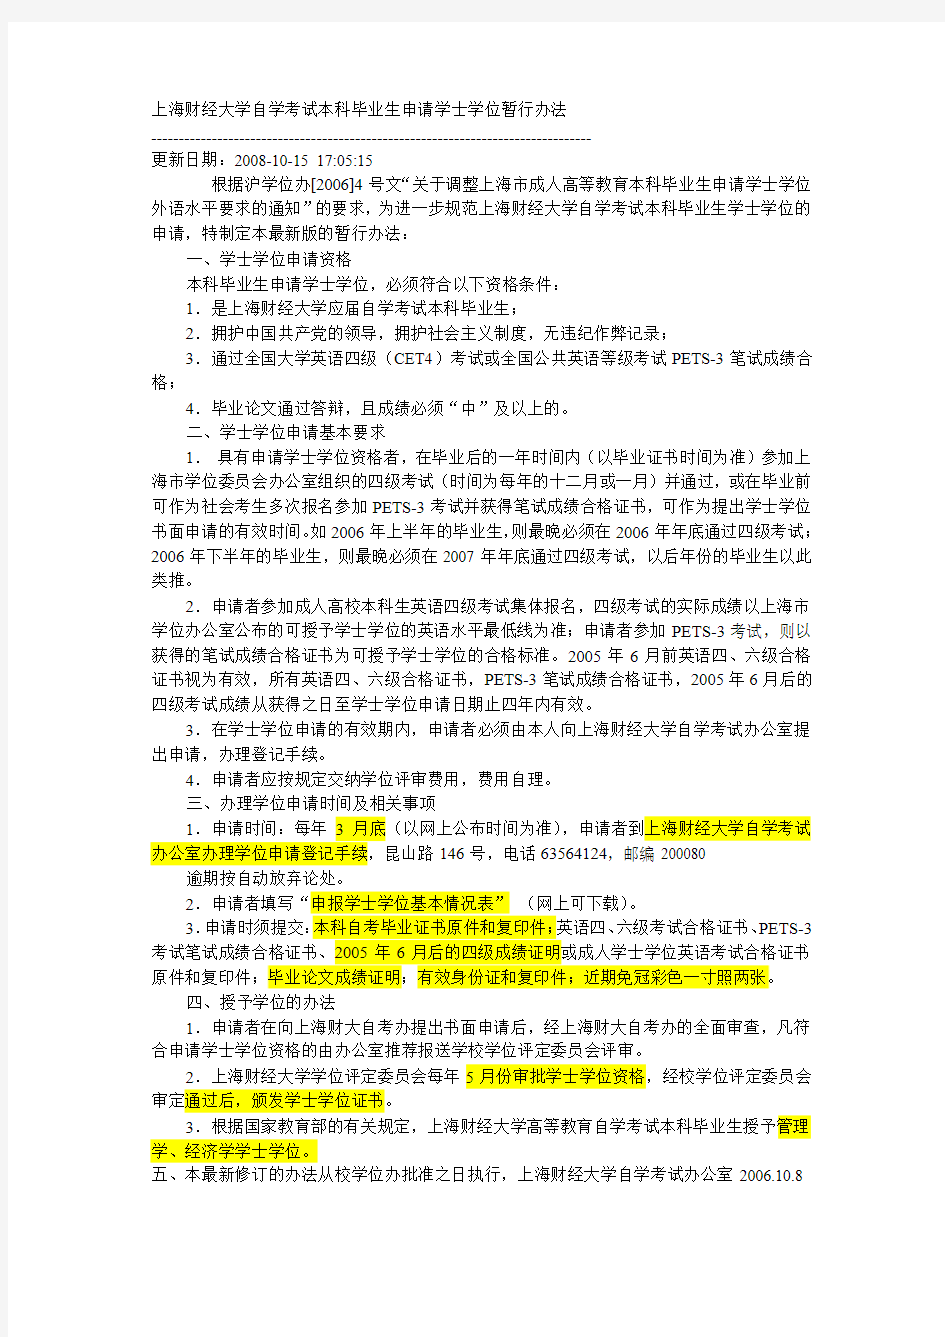 上海财经大学自学考试本科毕业生申请学士学位暂行办法